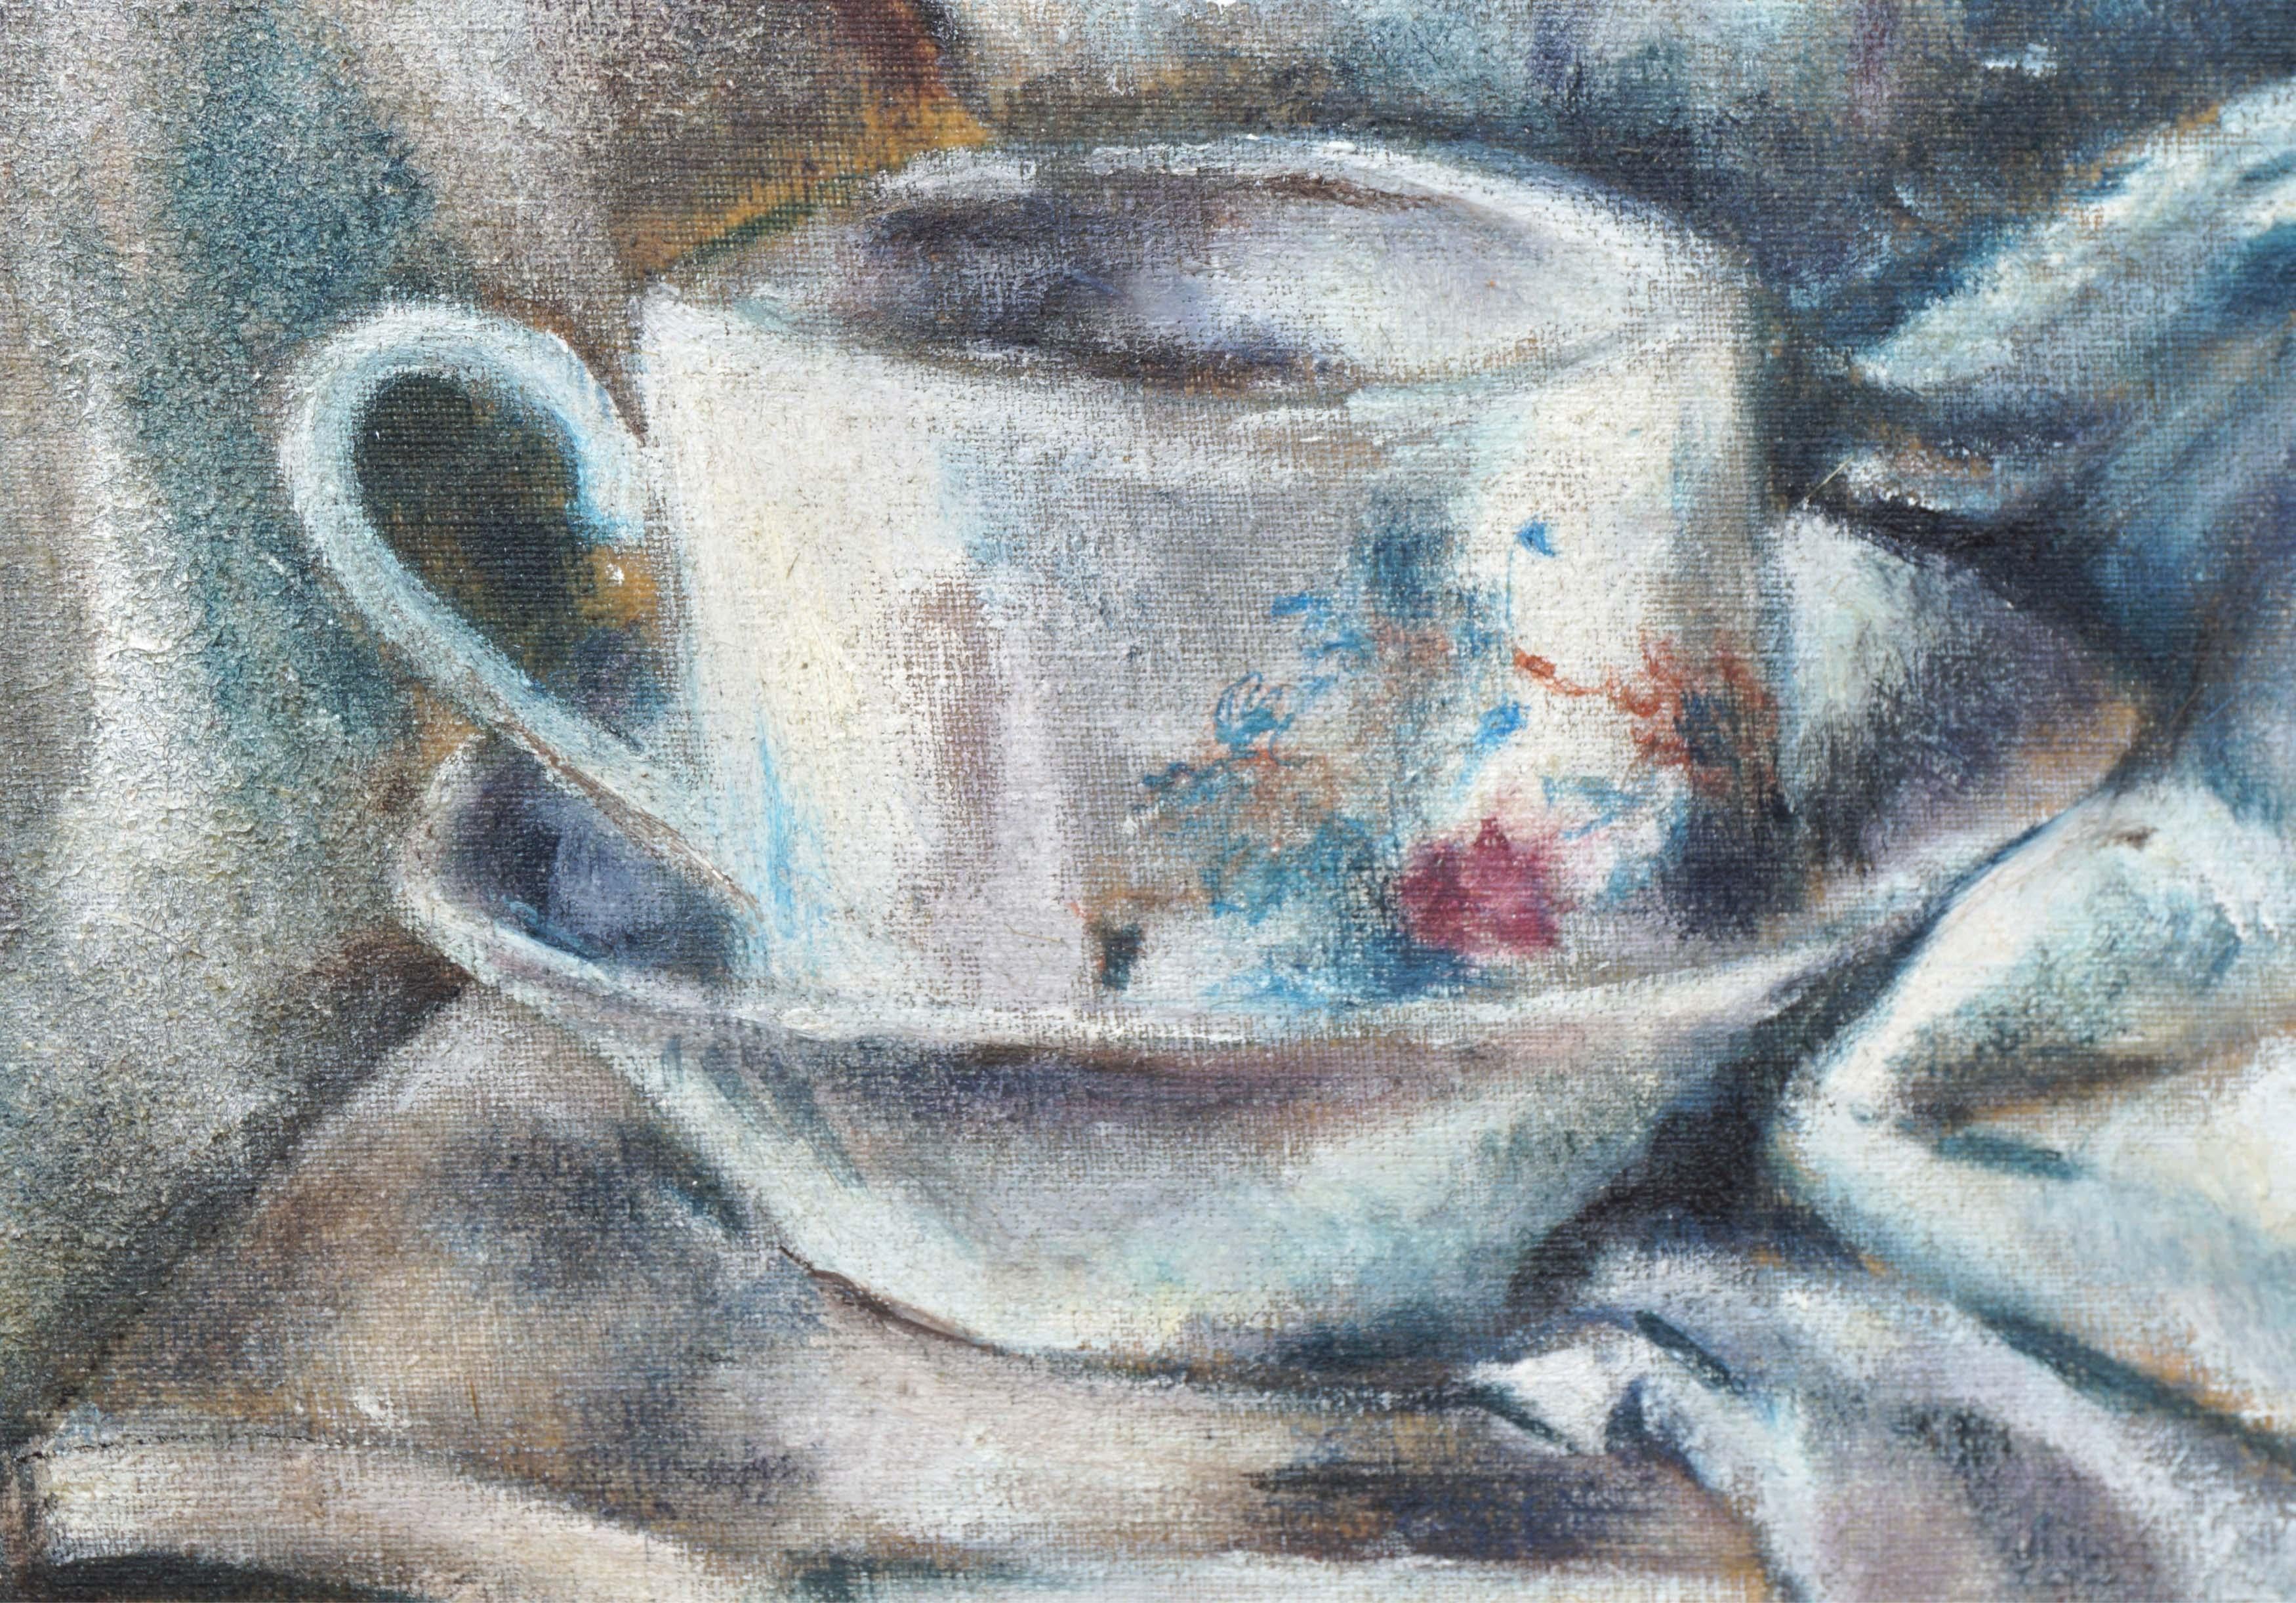 Wunderschönes französisches impressionistisches Stillleben mit Sommerfrüchten wie Pflaumen und Pfirsichen und einer Tasse Tee, um 1990. Nicht signiert. Es handelt sich um eine Studie im klassischen Stil von Paul Cezanne, der für seine